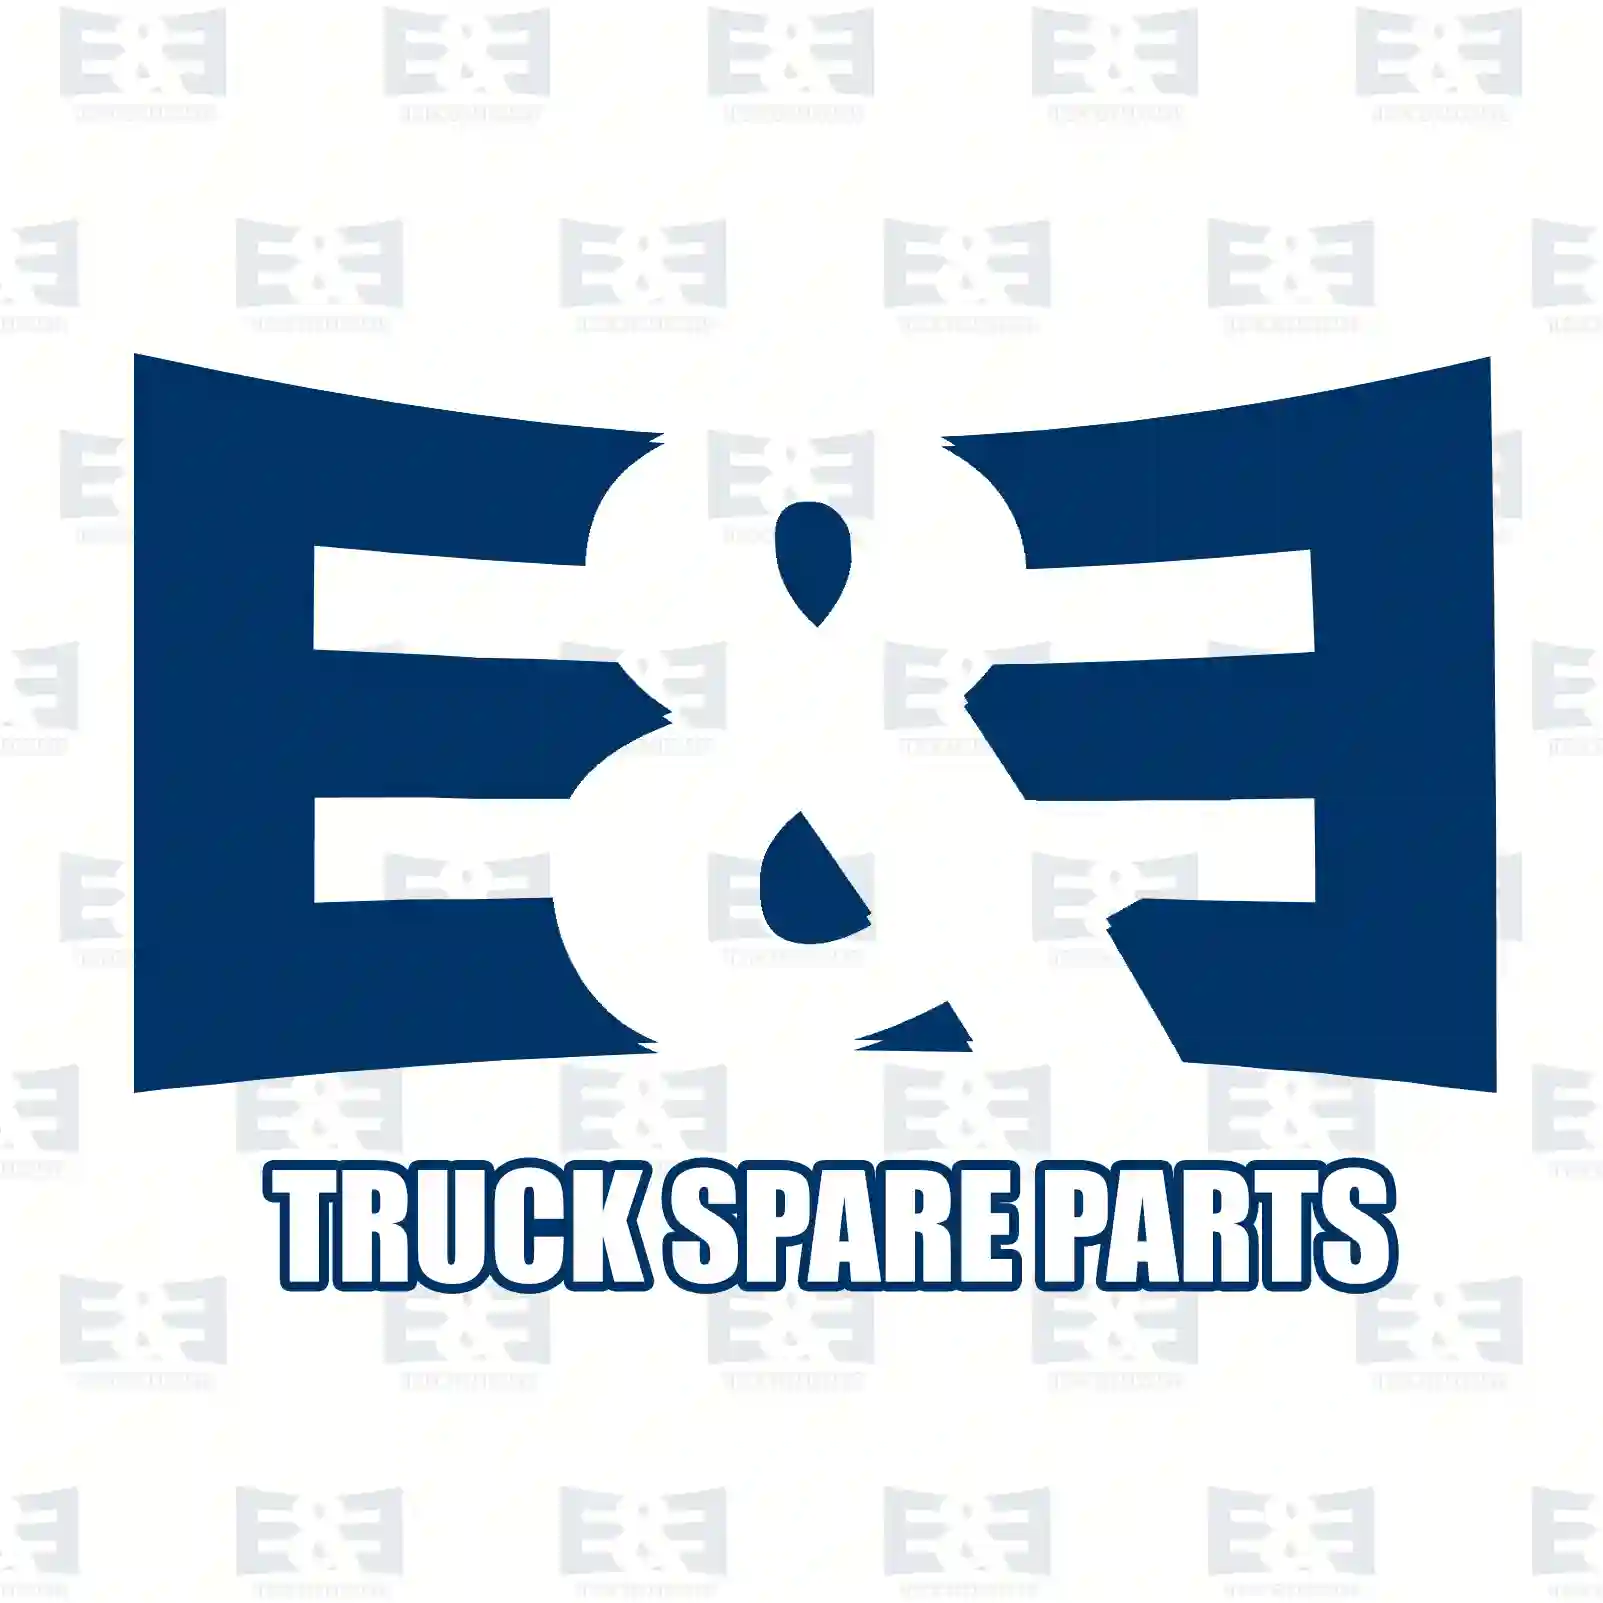 Cabin tilt cylinder, 2E2275685, 5010098876, , , , , , , , ||  2E2275685 E&E Truck Spare Parts | Truck Spare Parts, Auotomotive Spare Parts Cabin tilt cylinder, 2E2275685, 5010098876, , , , , , , , ||  2E2275685 E&E Truck Spare Parts | Truck Spare Parts, Auotomotive Spare Parts